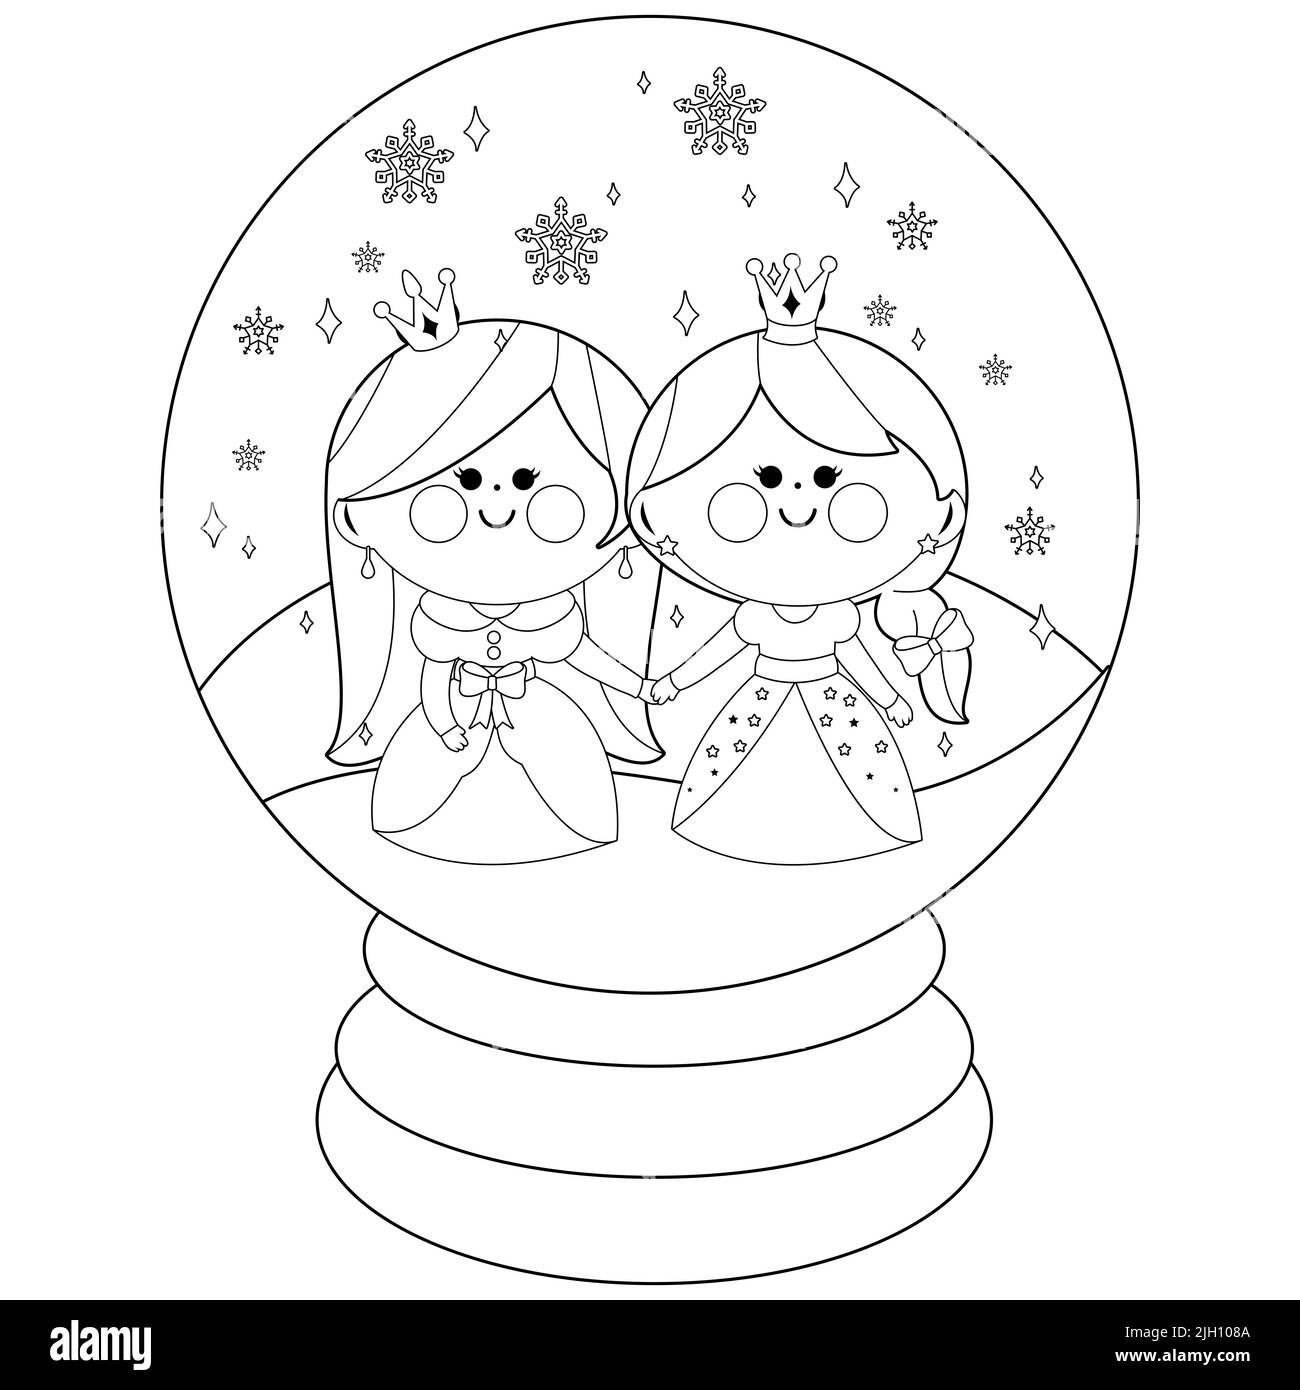 De belles princesses dans un globe de neige. Page de couleur noir et blanc Banque D'Images